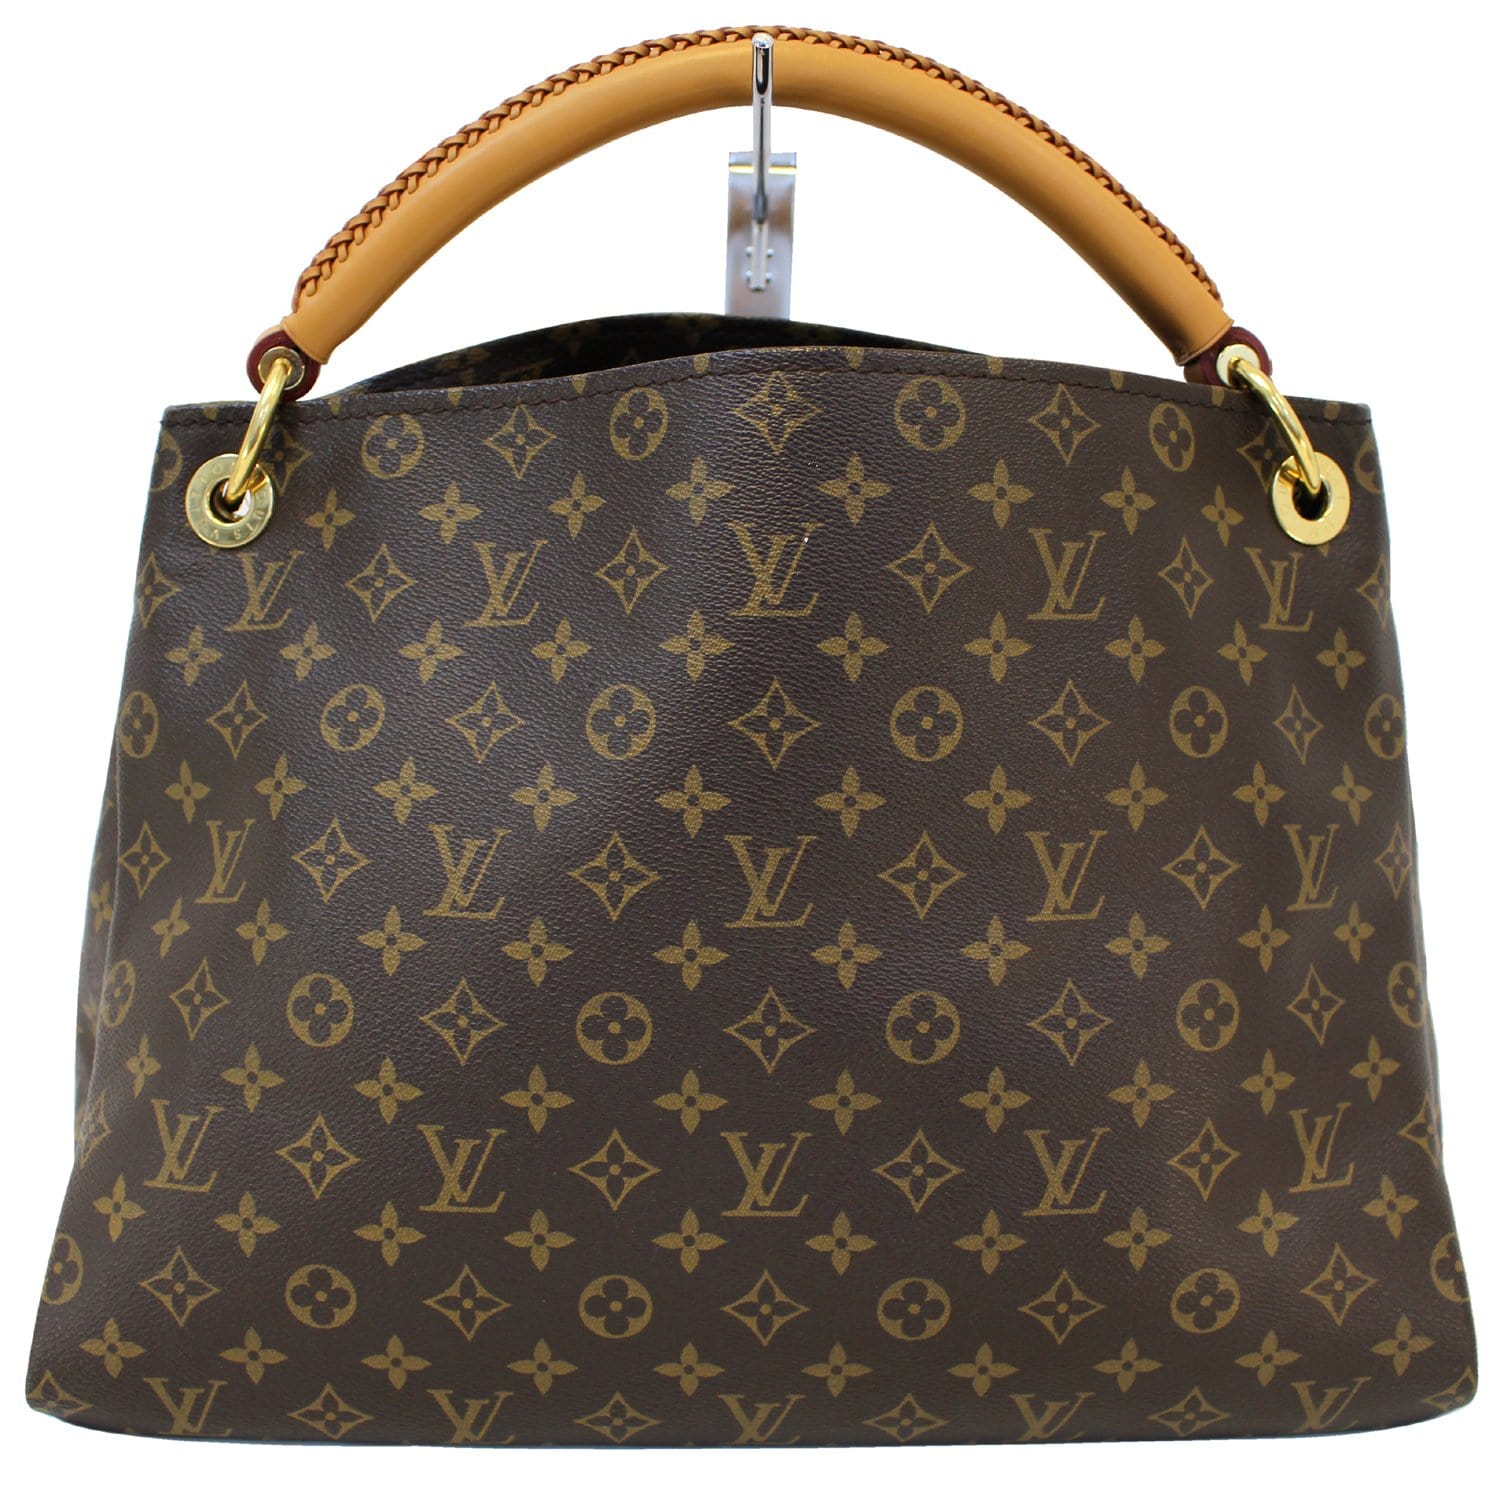 Authentic LOUIS VUITTON Artsy MM Monogram Canvas Tote Handbag E3313 | Dallas Designer Handbags